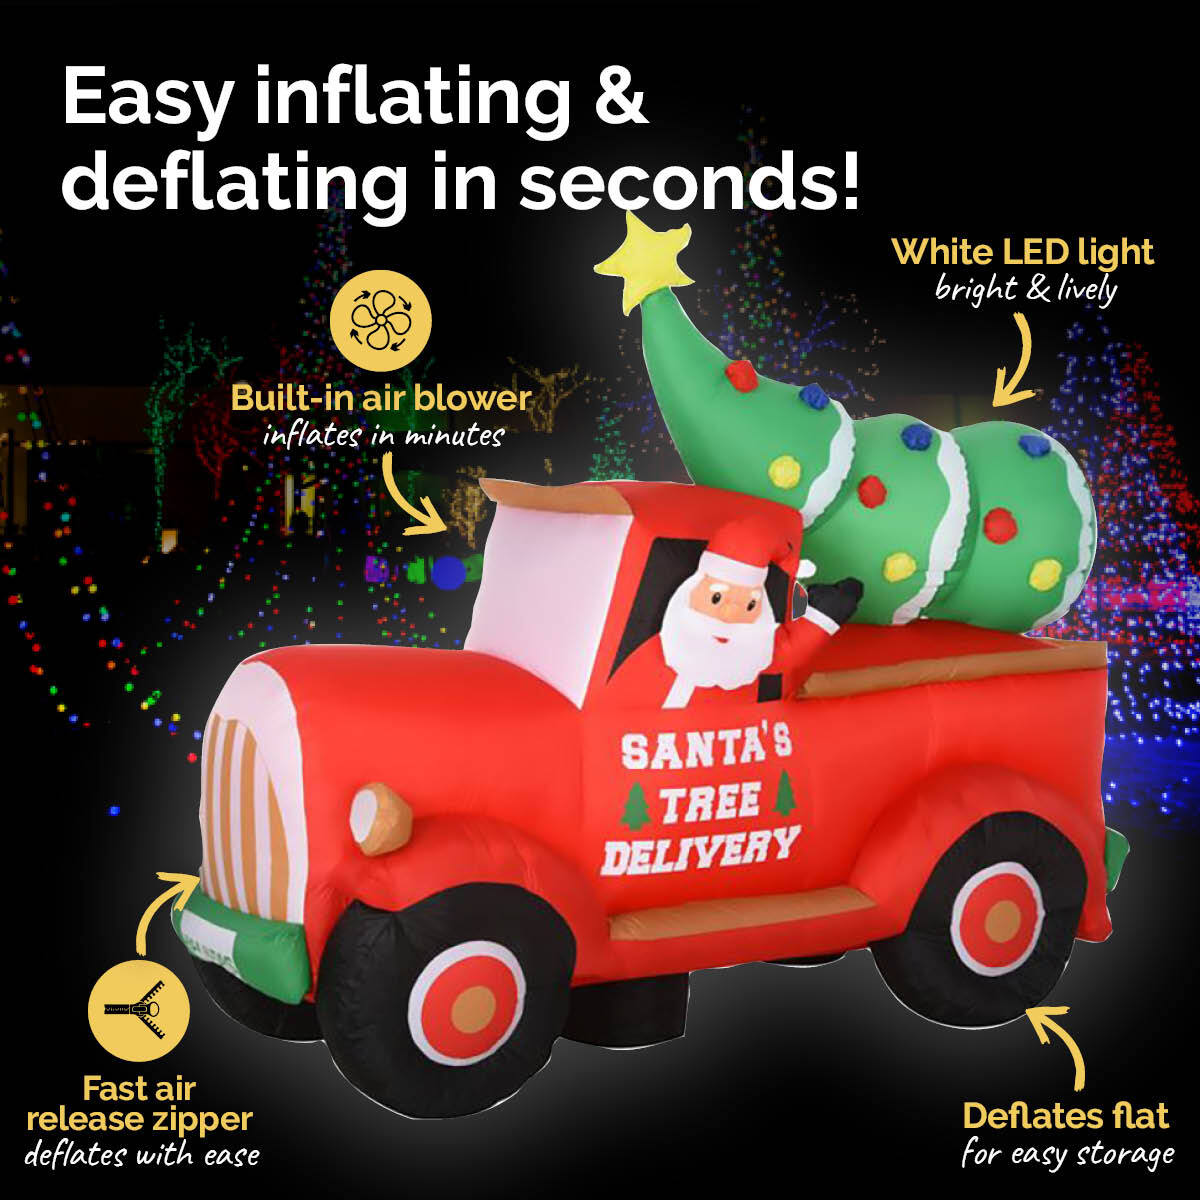 Christmas By Sas 2.25m Santa Ute & Tree Built-In Blower Bright LED Lighting - Little Kids Business